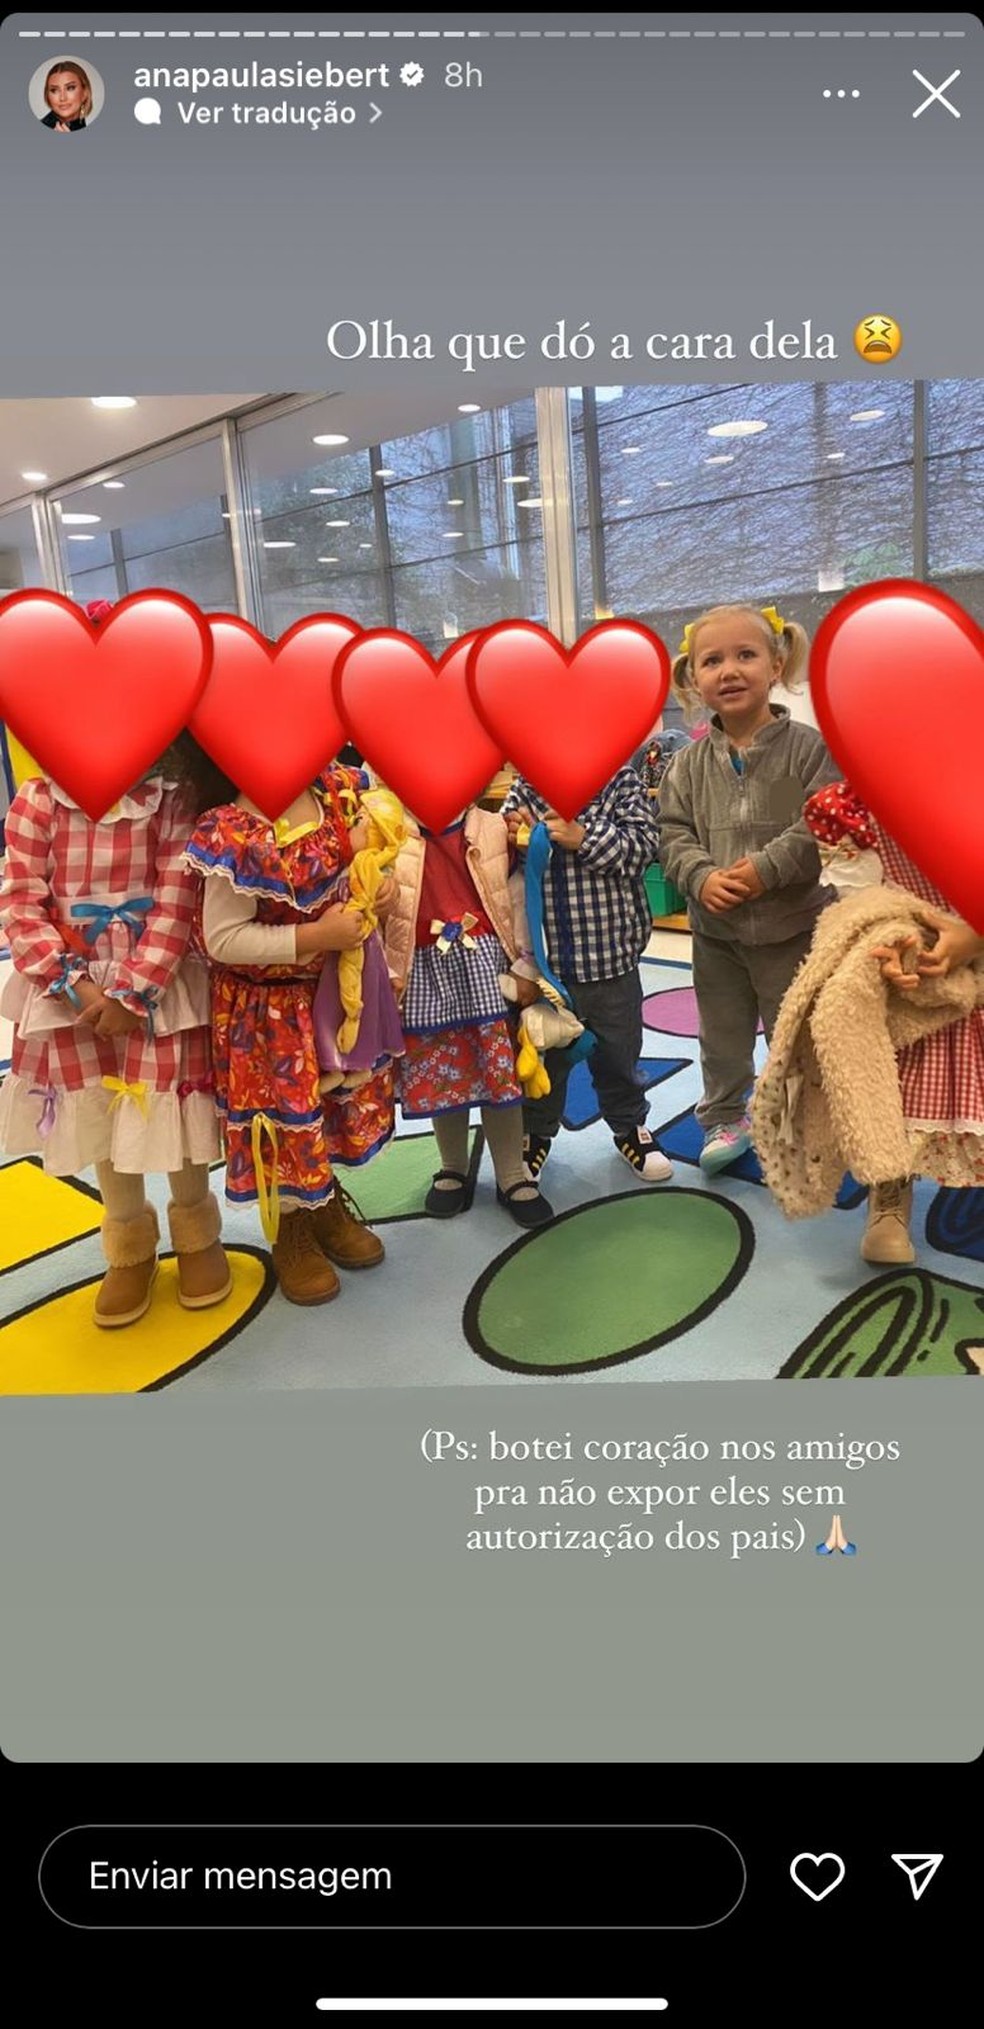 Vicky, filha de Ana Paula Siebert, foi para a escola sem roupa de festa junina — Foto: Reprodução/Instagram